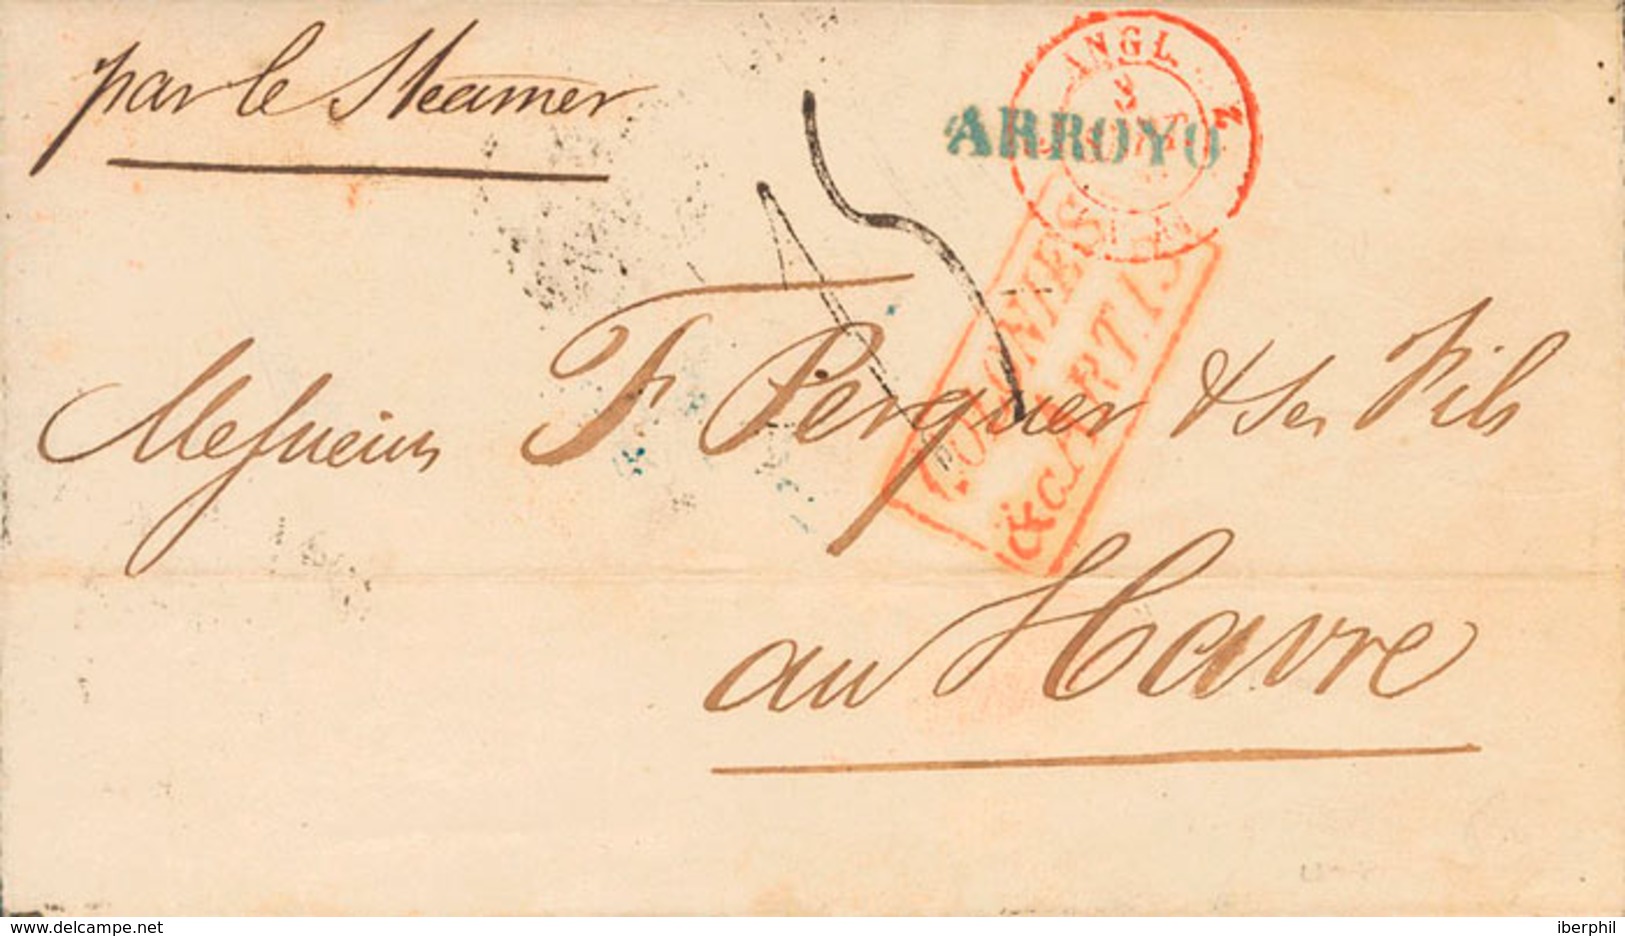 1560 1850. GUAYAMA A LE HAVRE (FRANCIA), Circulada Por Vapor Inglés. Marcas ARROYO Y FRANCO (al Dorso), En Azul (P.E.1 Y - Puerto Rico